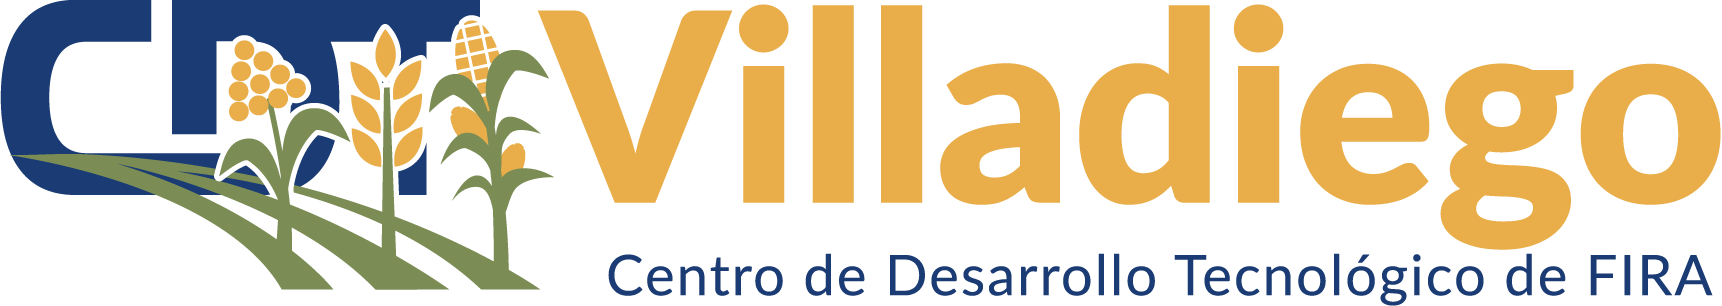 CDT Villadiego